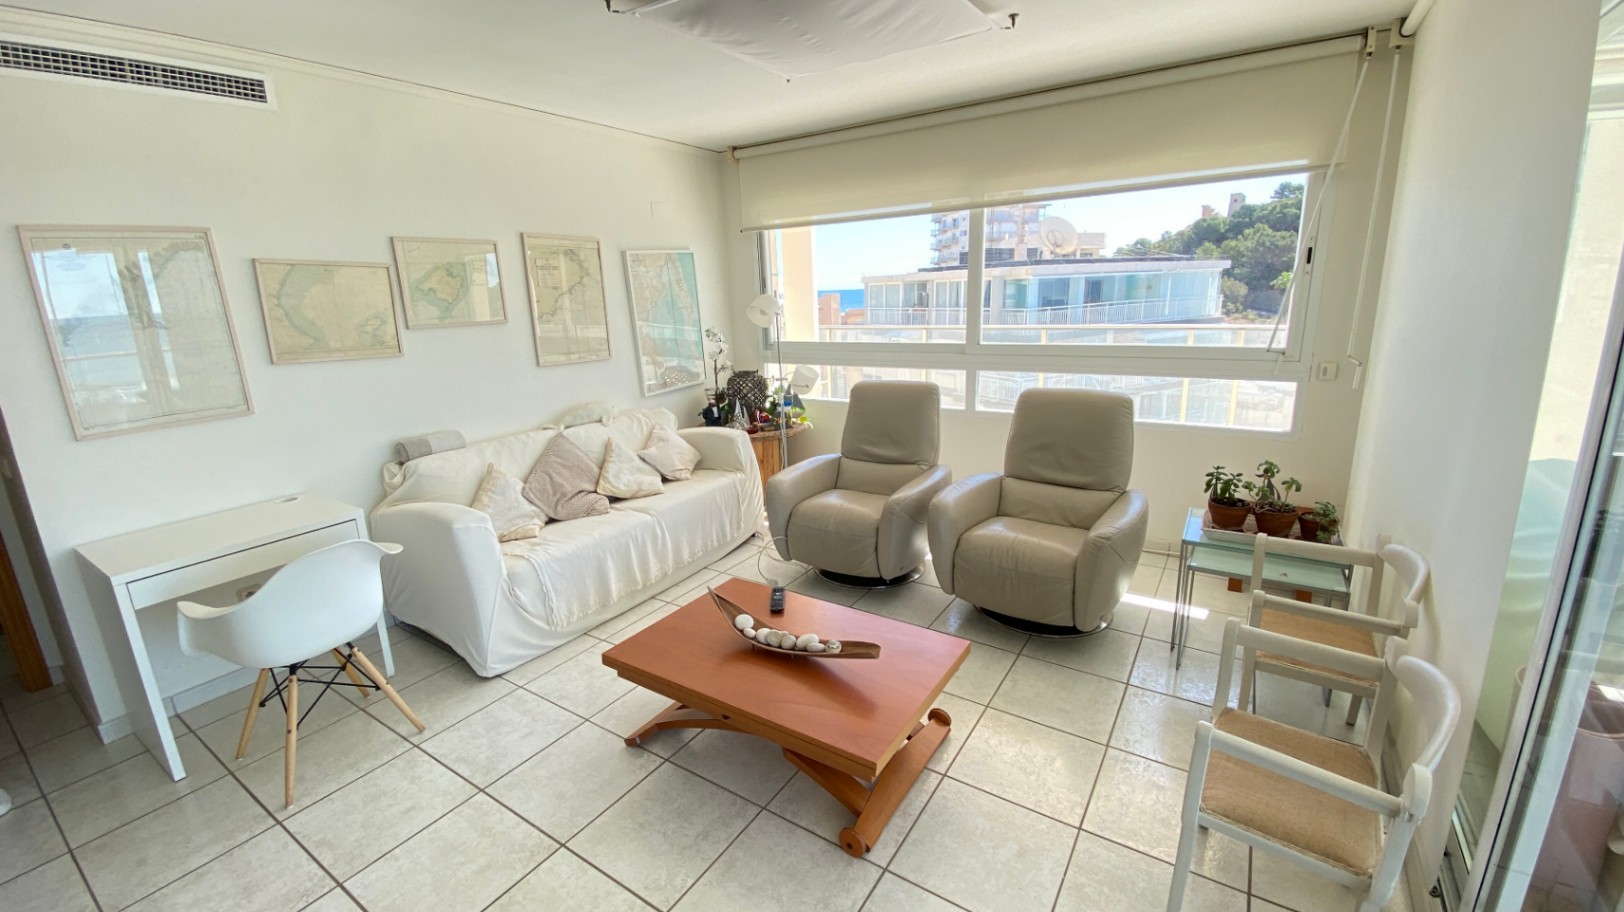 Jaarlijkse huur! Ruim en gezellig appartement met panoramisch uitzicht op zee in de haven van Calpe.